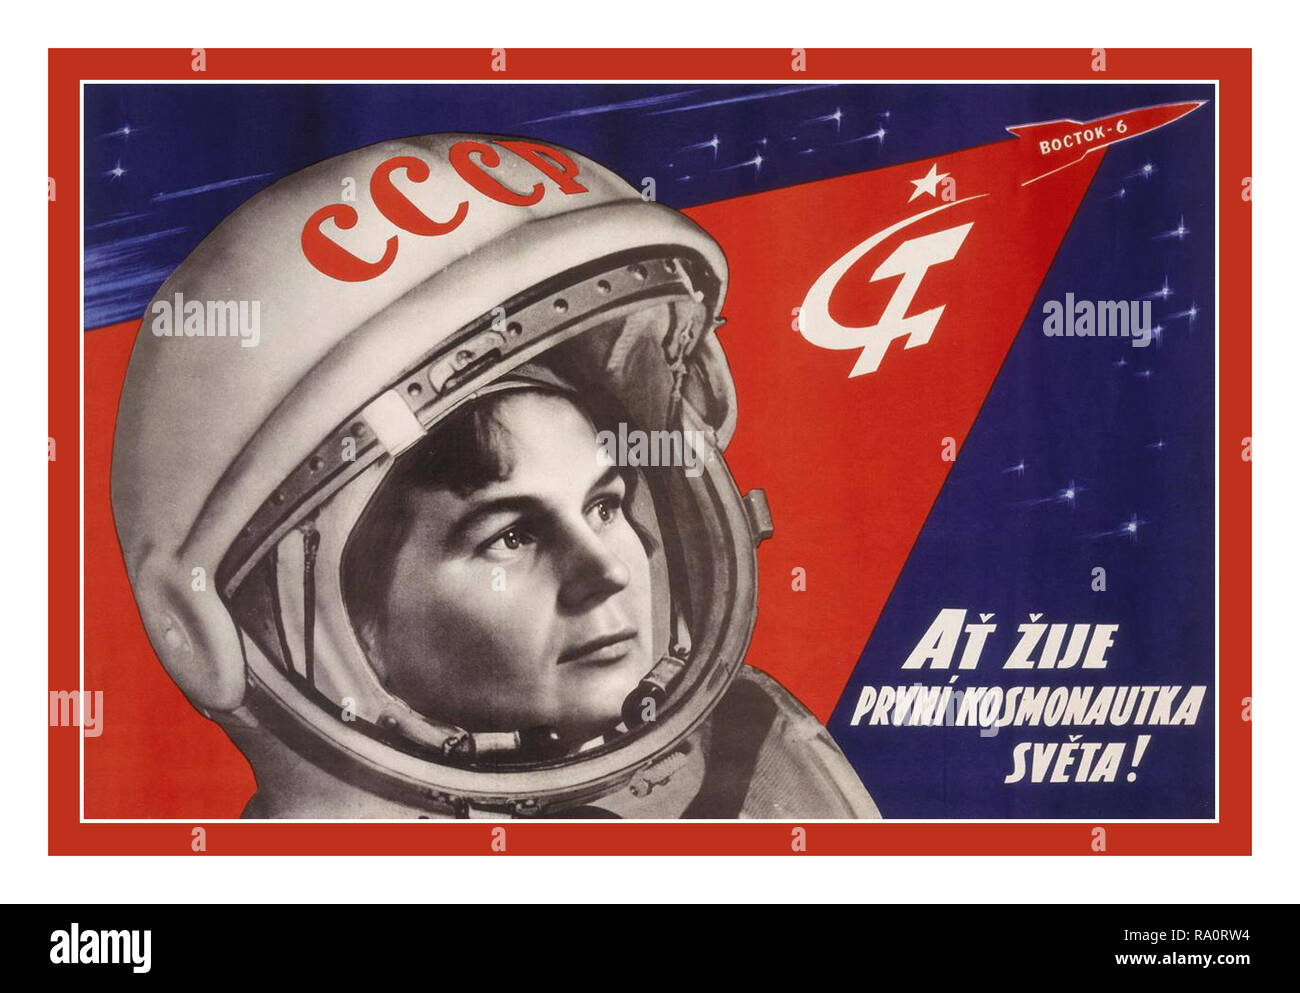 Vintage anni sessanta Soviet russo URSS spazio gara Propaganda Poster "gloria per la prima donna cosmonauta!" 16 giugno 1963, all'età di 26, Valentina Tereshkova è diventata la prima donna a volare nello spazio. La sua tre giorni di missione era il dodicesimo il volo spaziale umano nella storia, a seguito di diversi russo Vostok e americani voli di mercurio. Legato alla sua sede di espulsione, Tereshkova rode all'interno del 7,5-piedi-wide (2,3 metri) cabina pressurizzata di Vostok-6 in 3 giorni di missione spaziale. Foto Stock